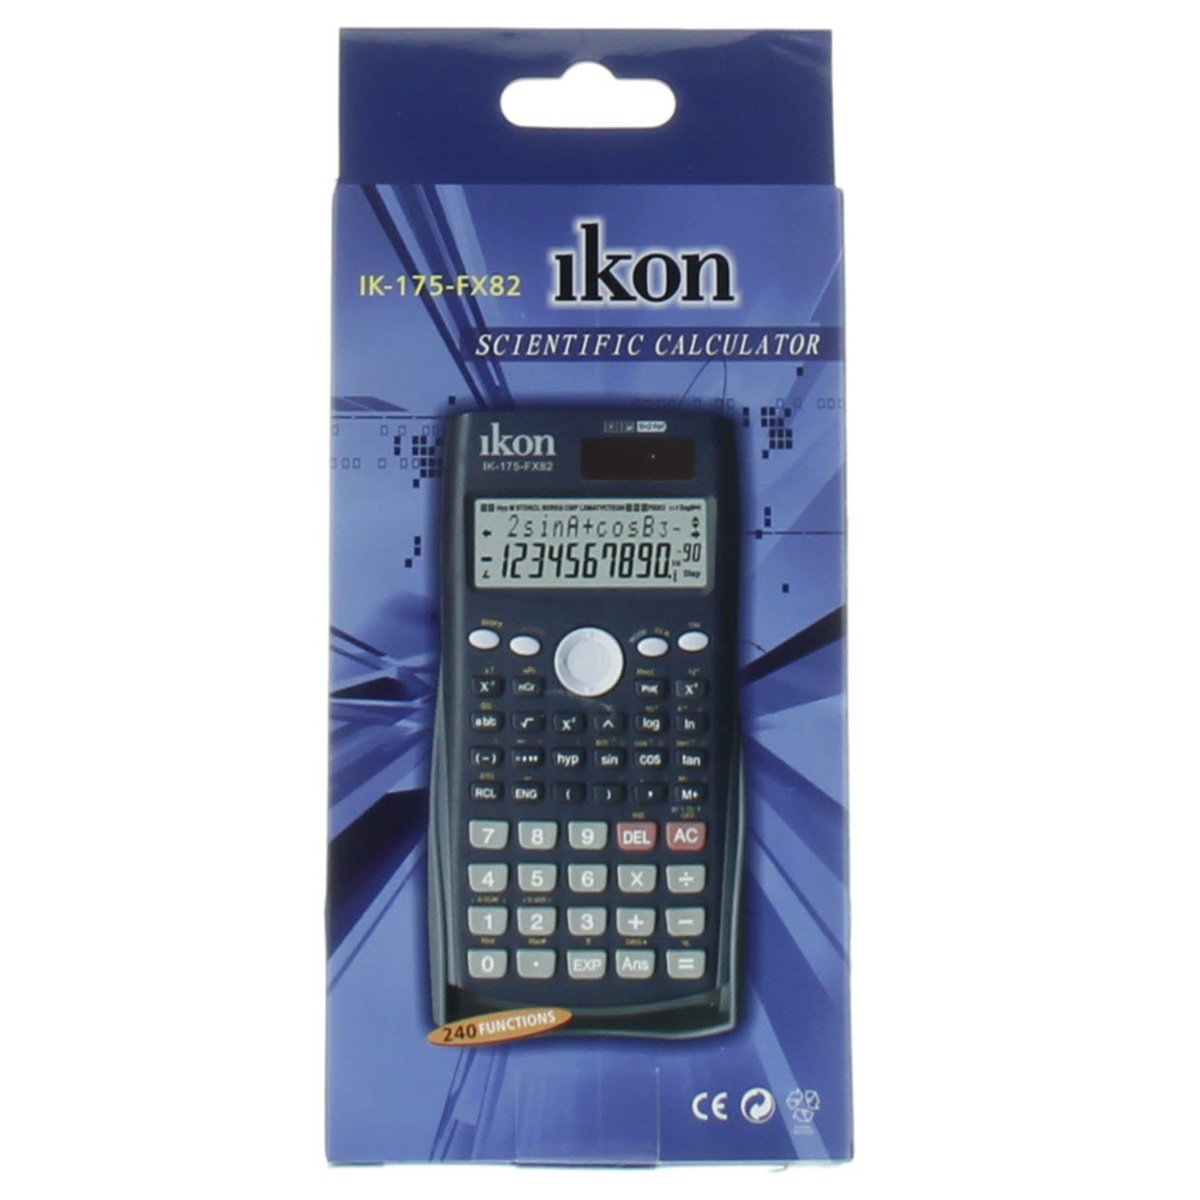 Ikon Scientific Calculator IK-175-FX82